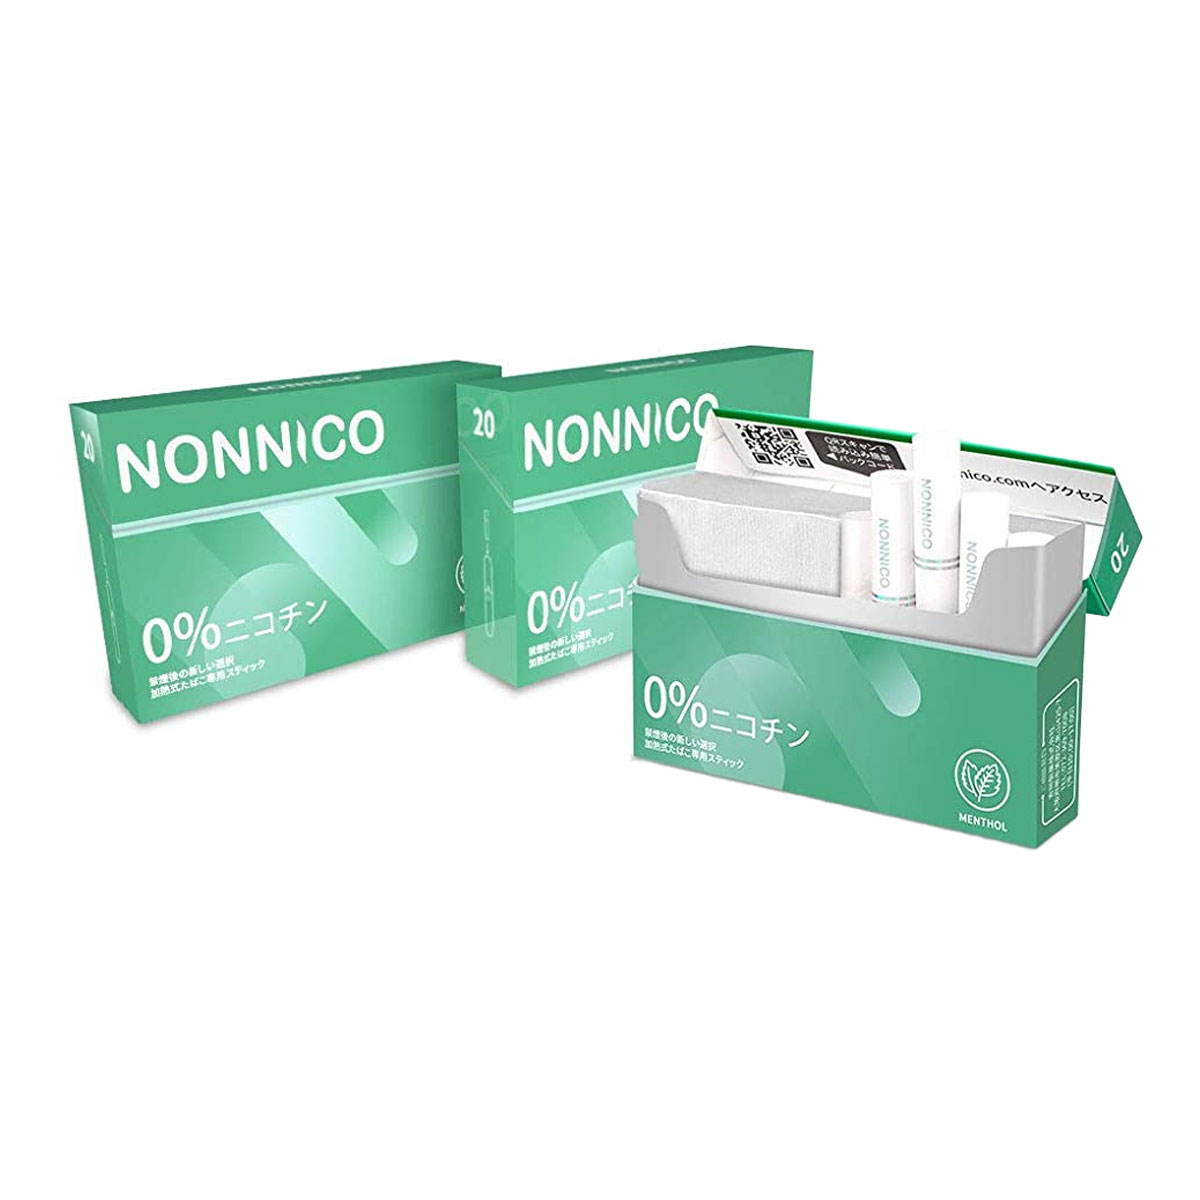 NONNICO ノンニコ ニコチン0 ニコチンゼロ スティック 茶葉 3箱 セット